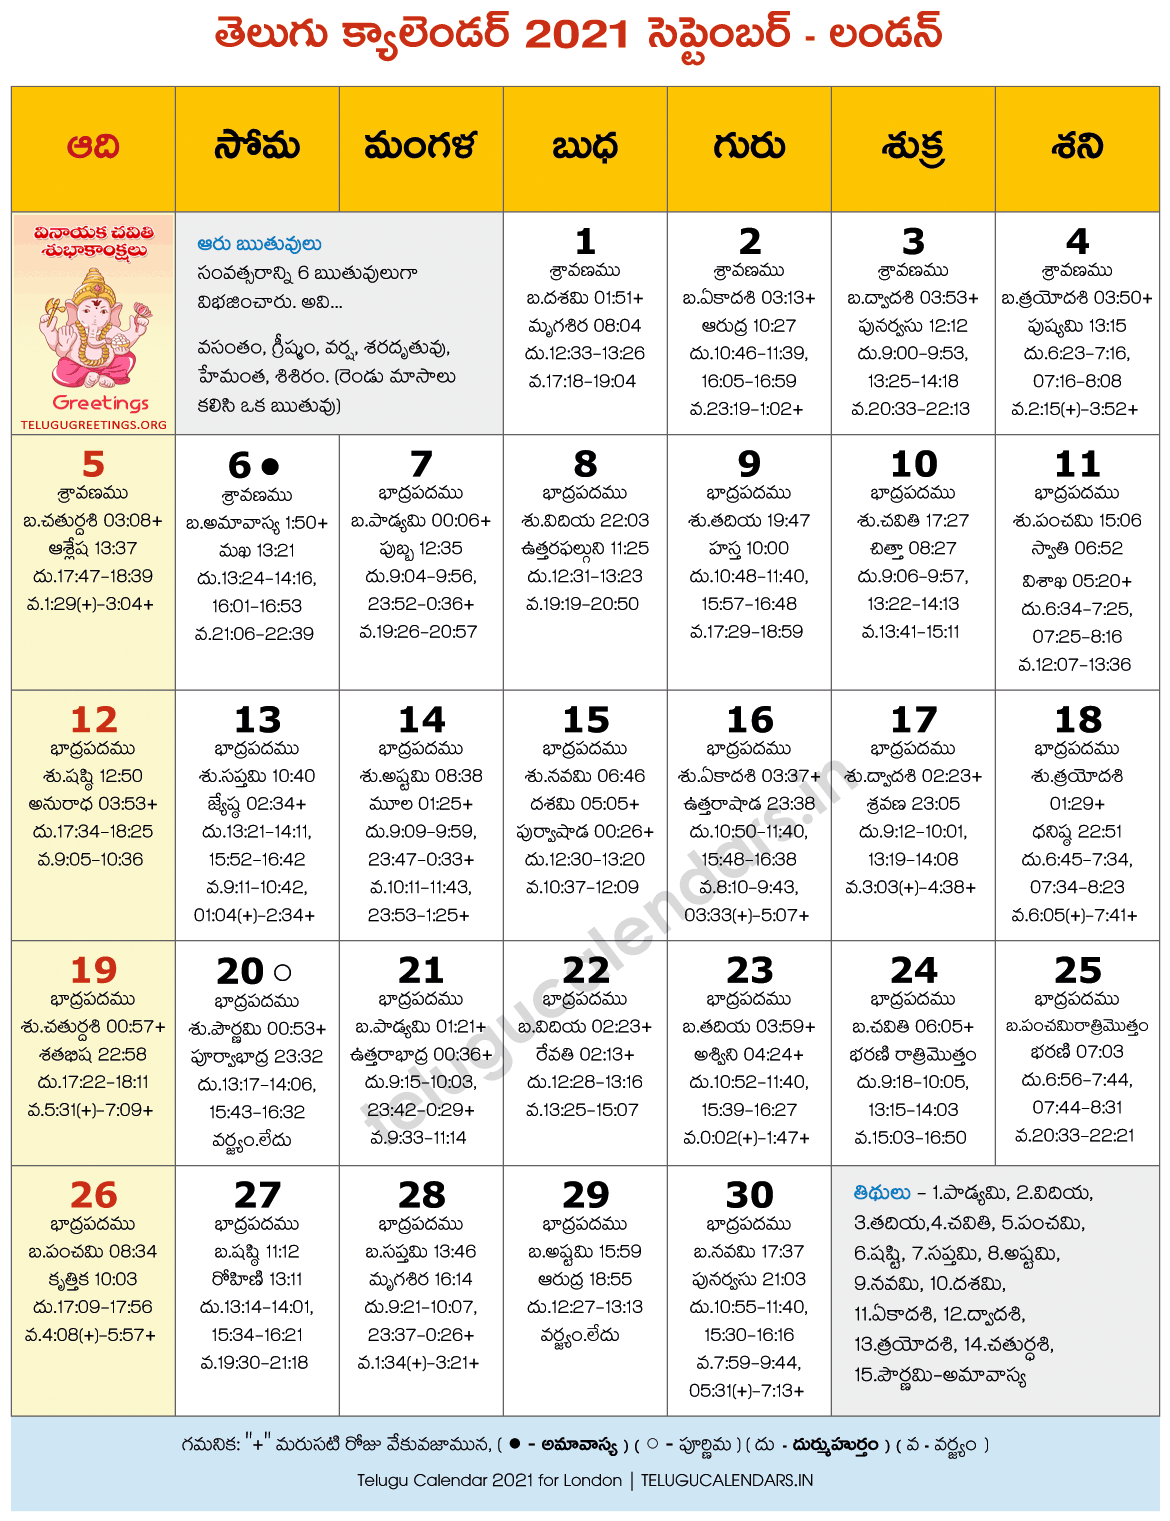 Telugu Calendar 2022 September London 2021 September Telugu Calendar - 2022 Telugu Calendar Pdf